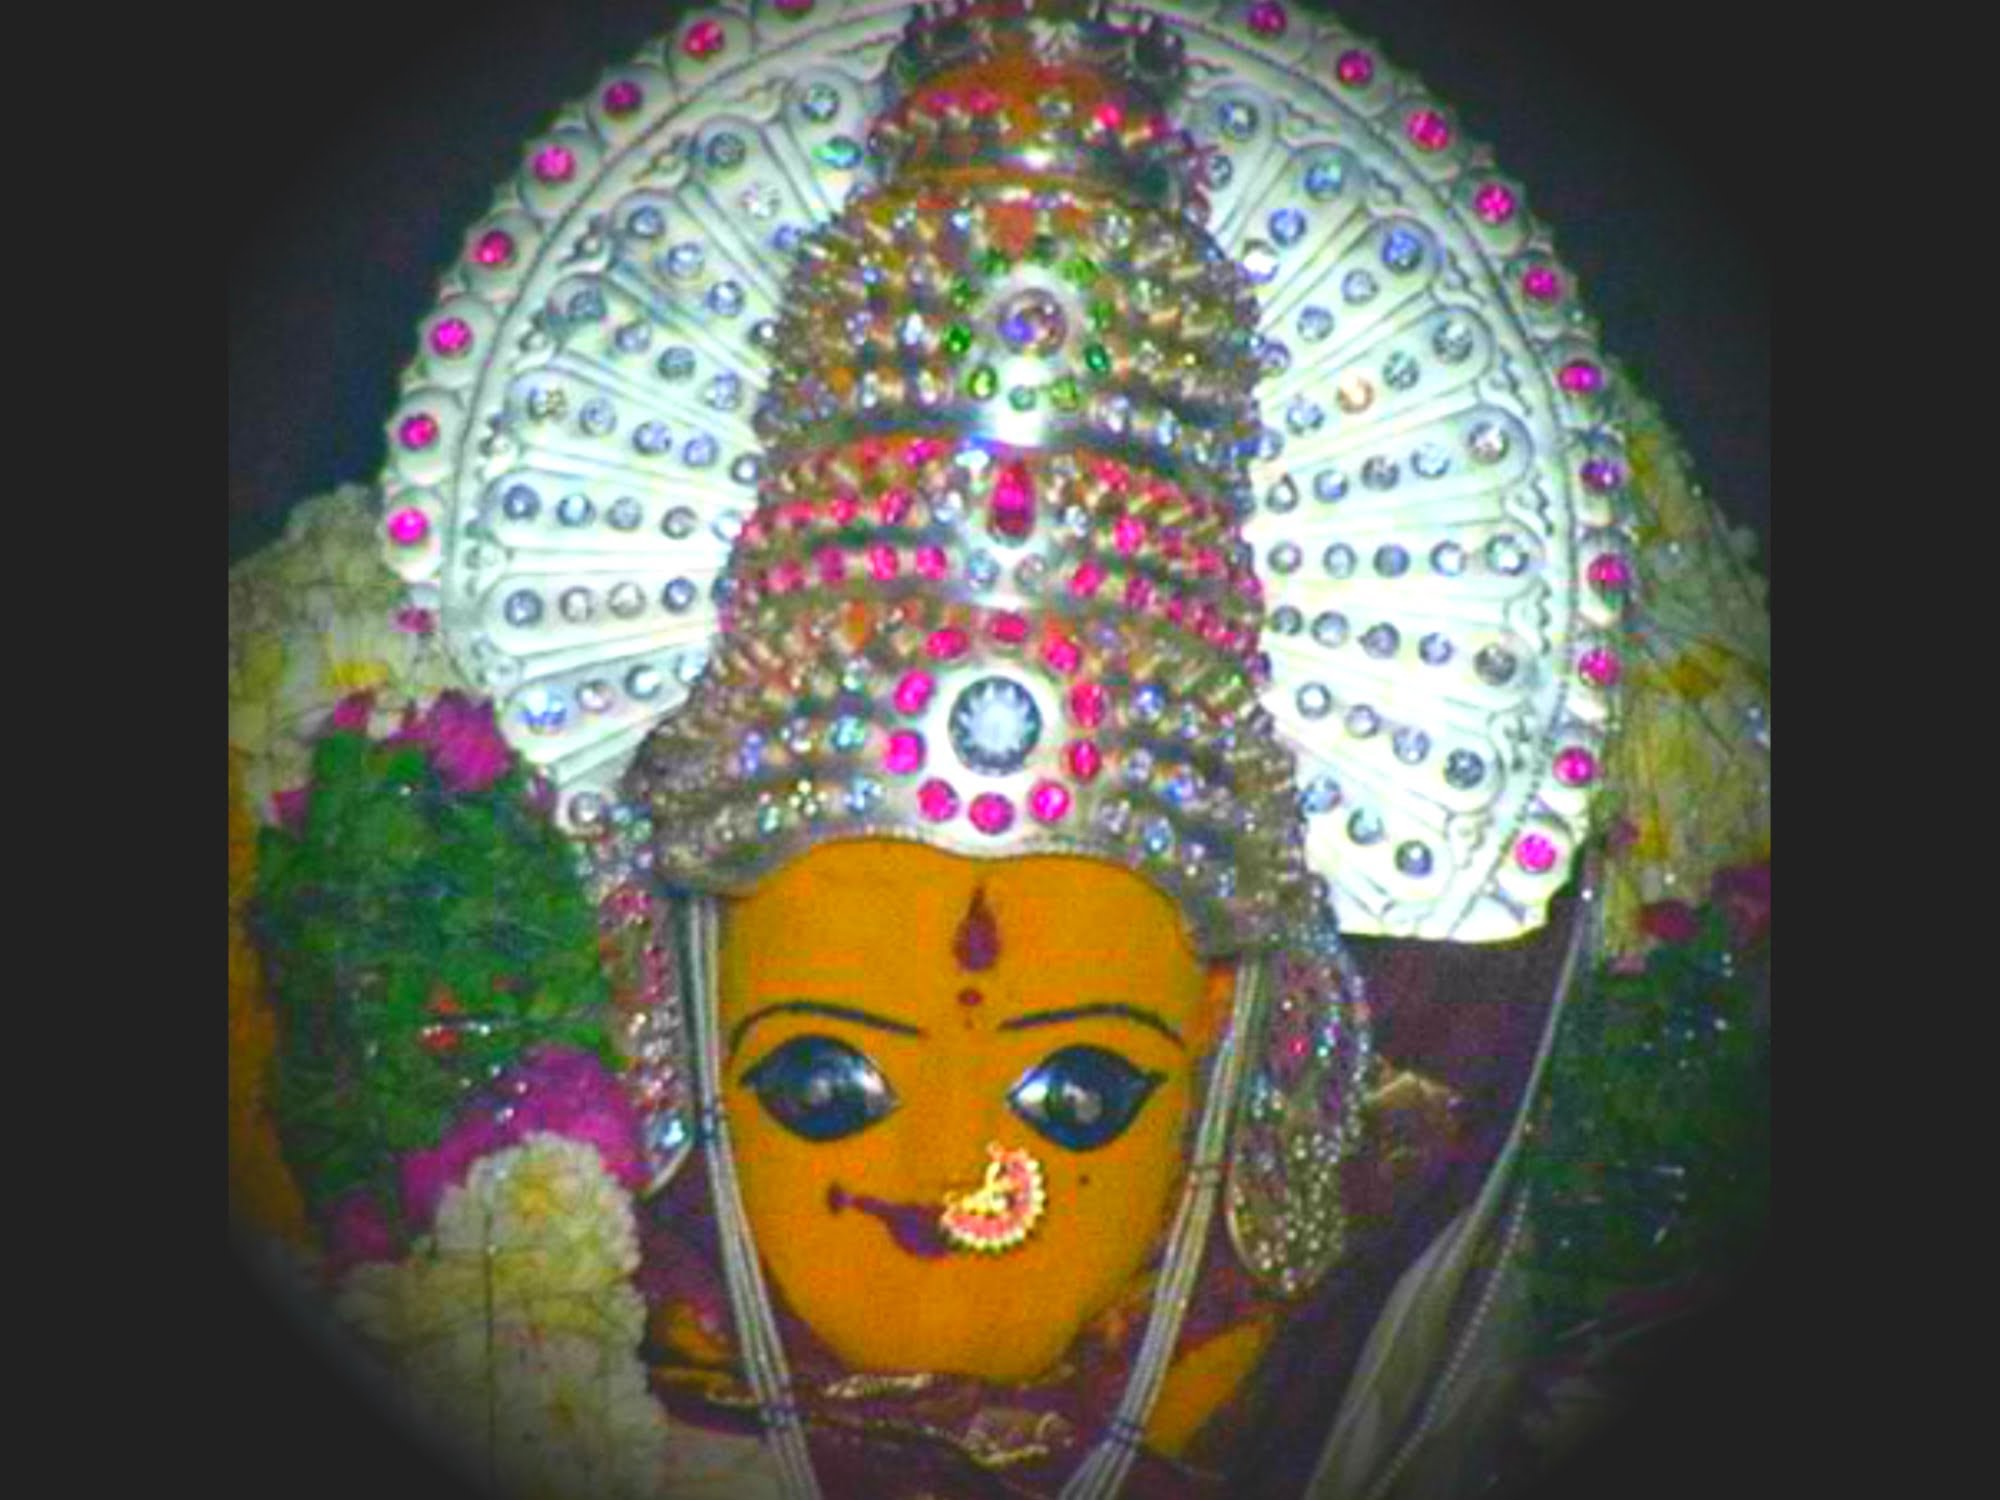 Basara Sri Gnana Saraswathi Temple-Basara,Adilabad,